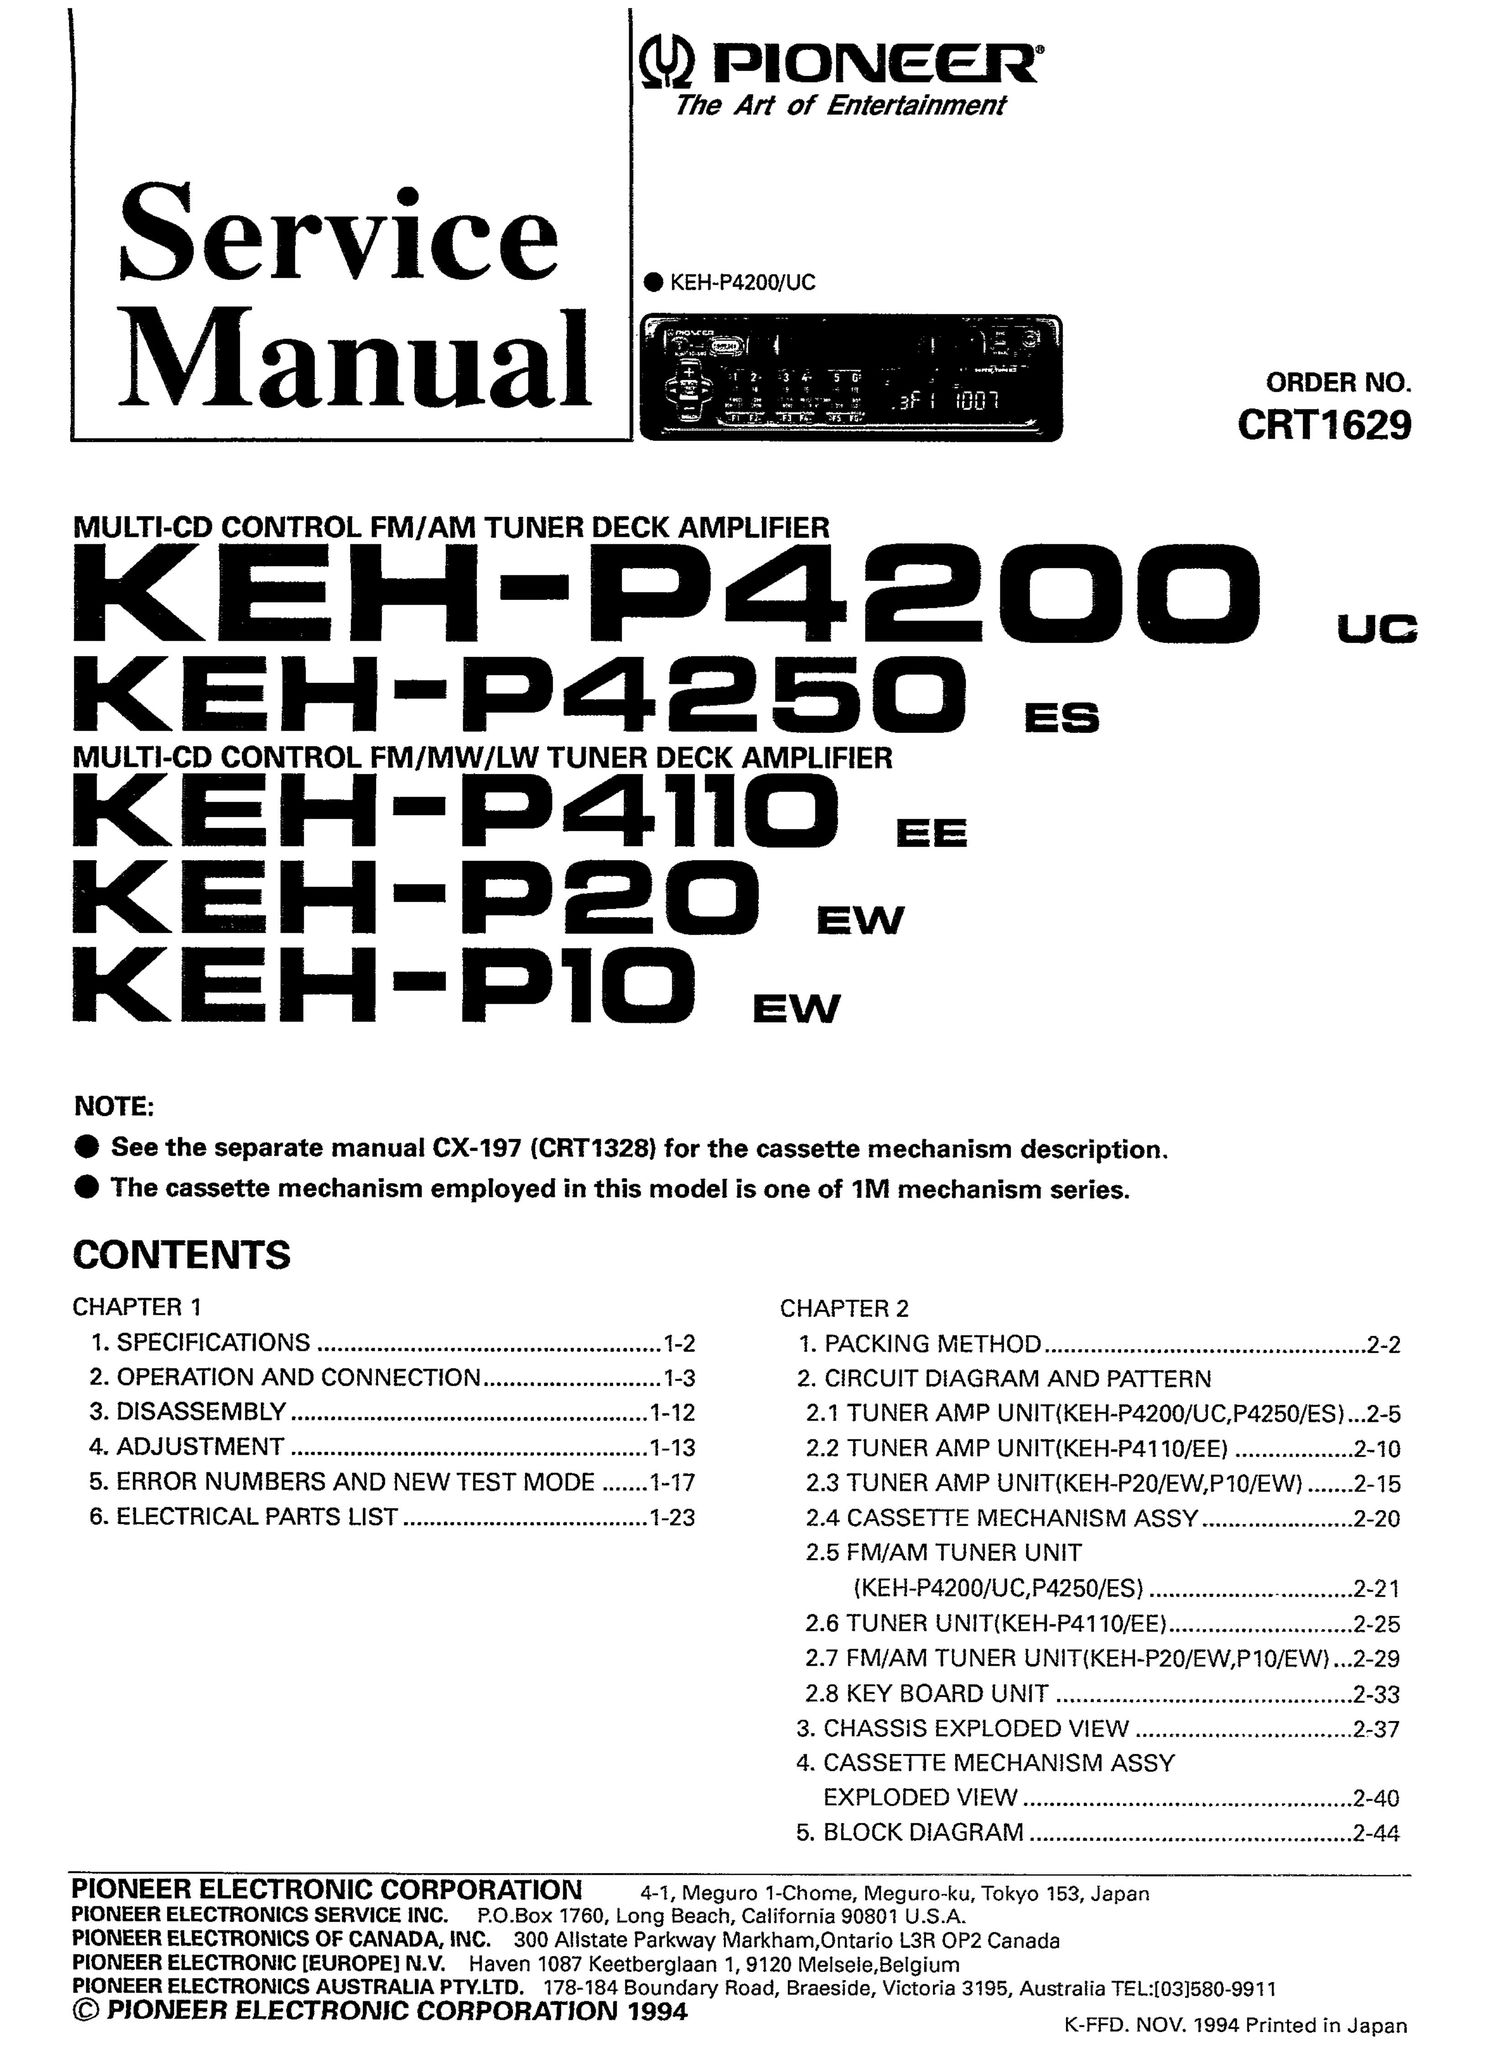 pioneer kehp 10 service manual